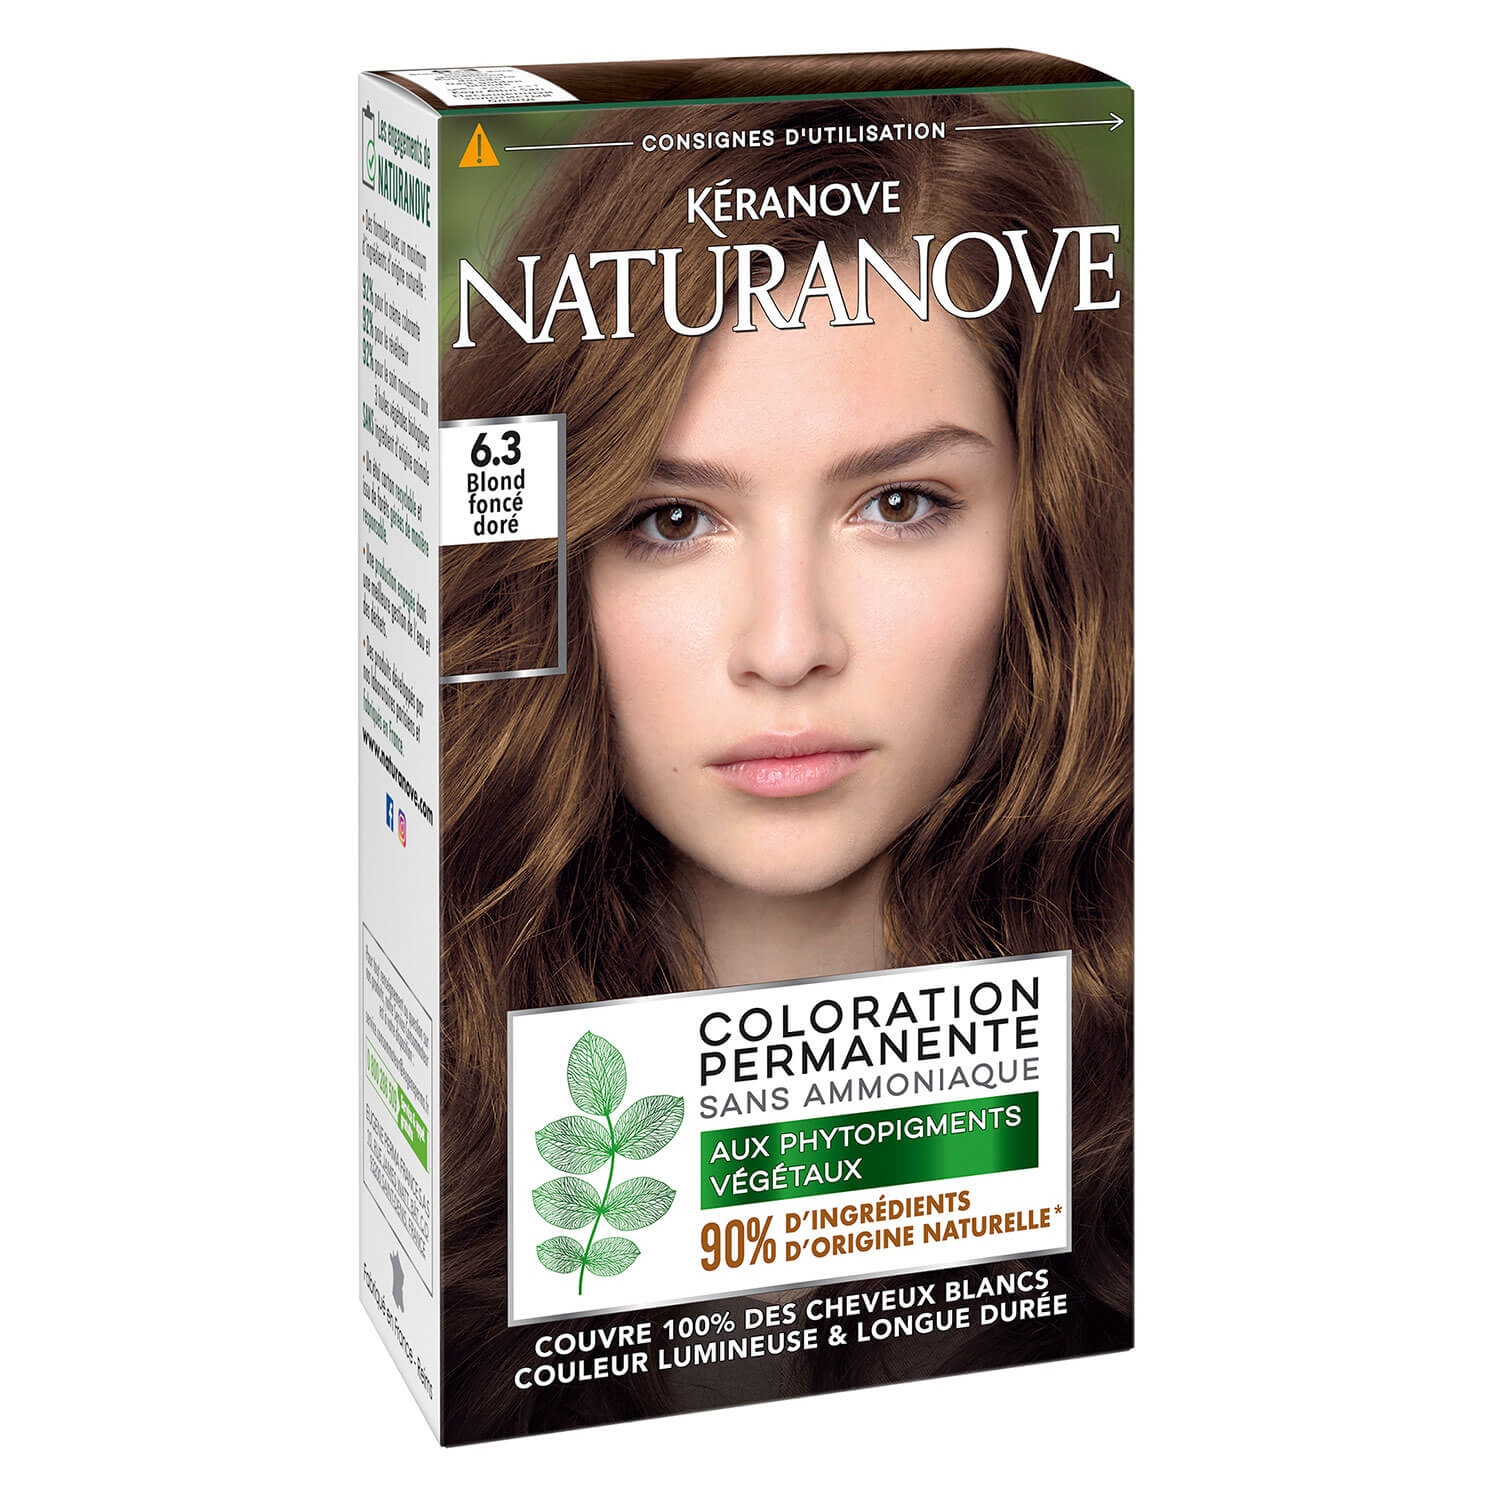 Produktbild von Naturanove - Dauerhafte Haarfarbe Dunkelgoldene Blondine 6.3